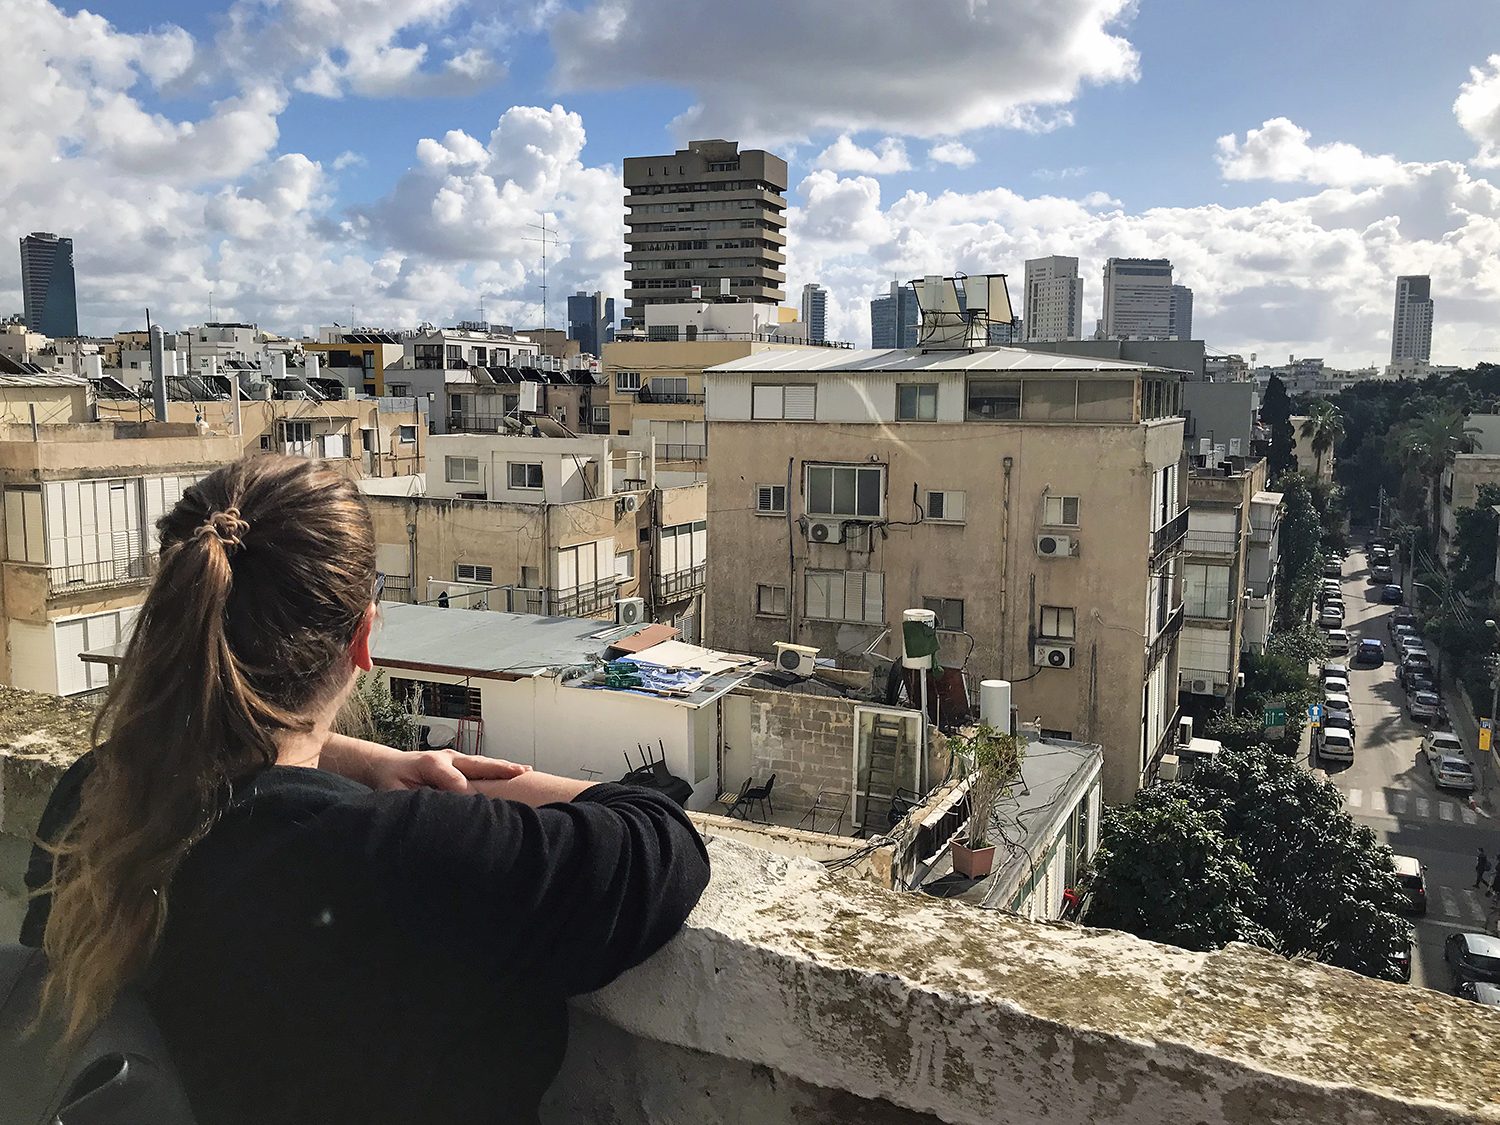 Urlaubstipps für Israel: Strände & Städte, Totes Meer & Wüste, Tel Aviv & Jerusalem